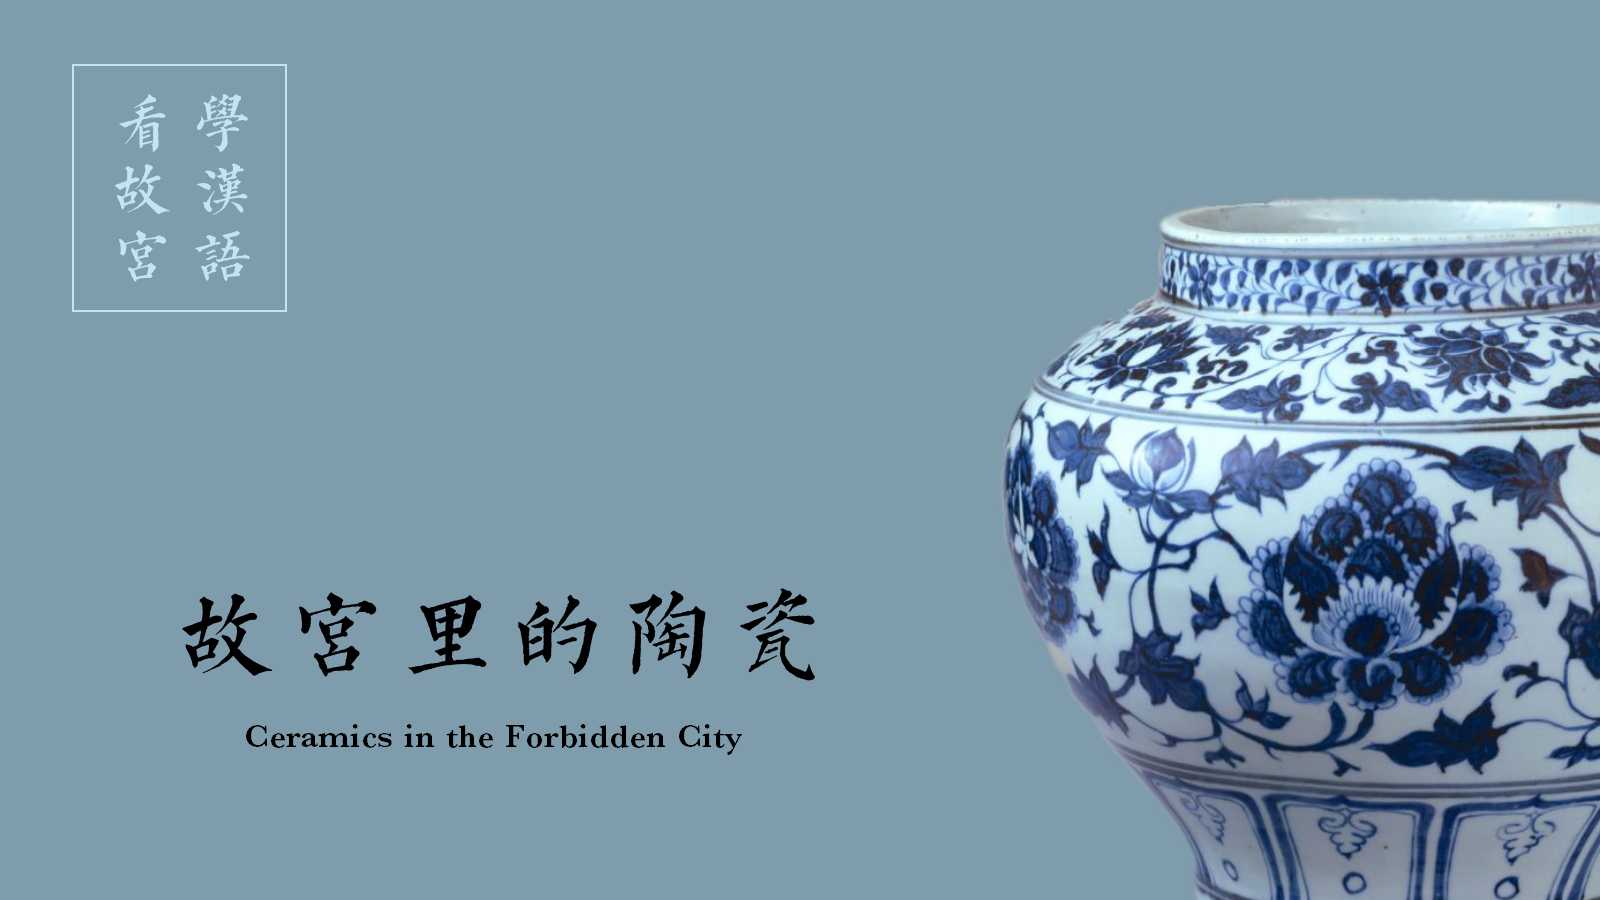 Treasures in the Forbidden City [Episode 02] Porcelain in the Forbidden City